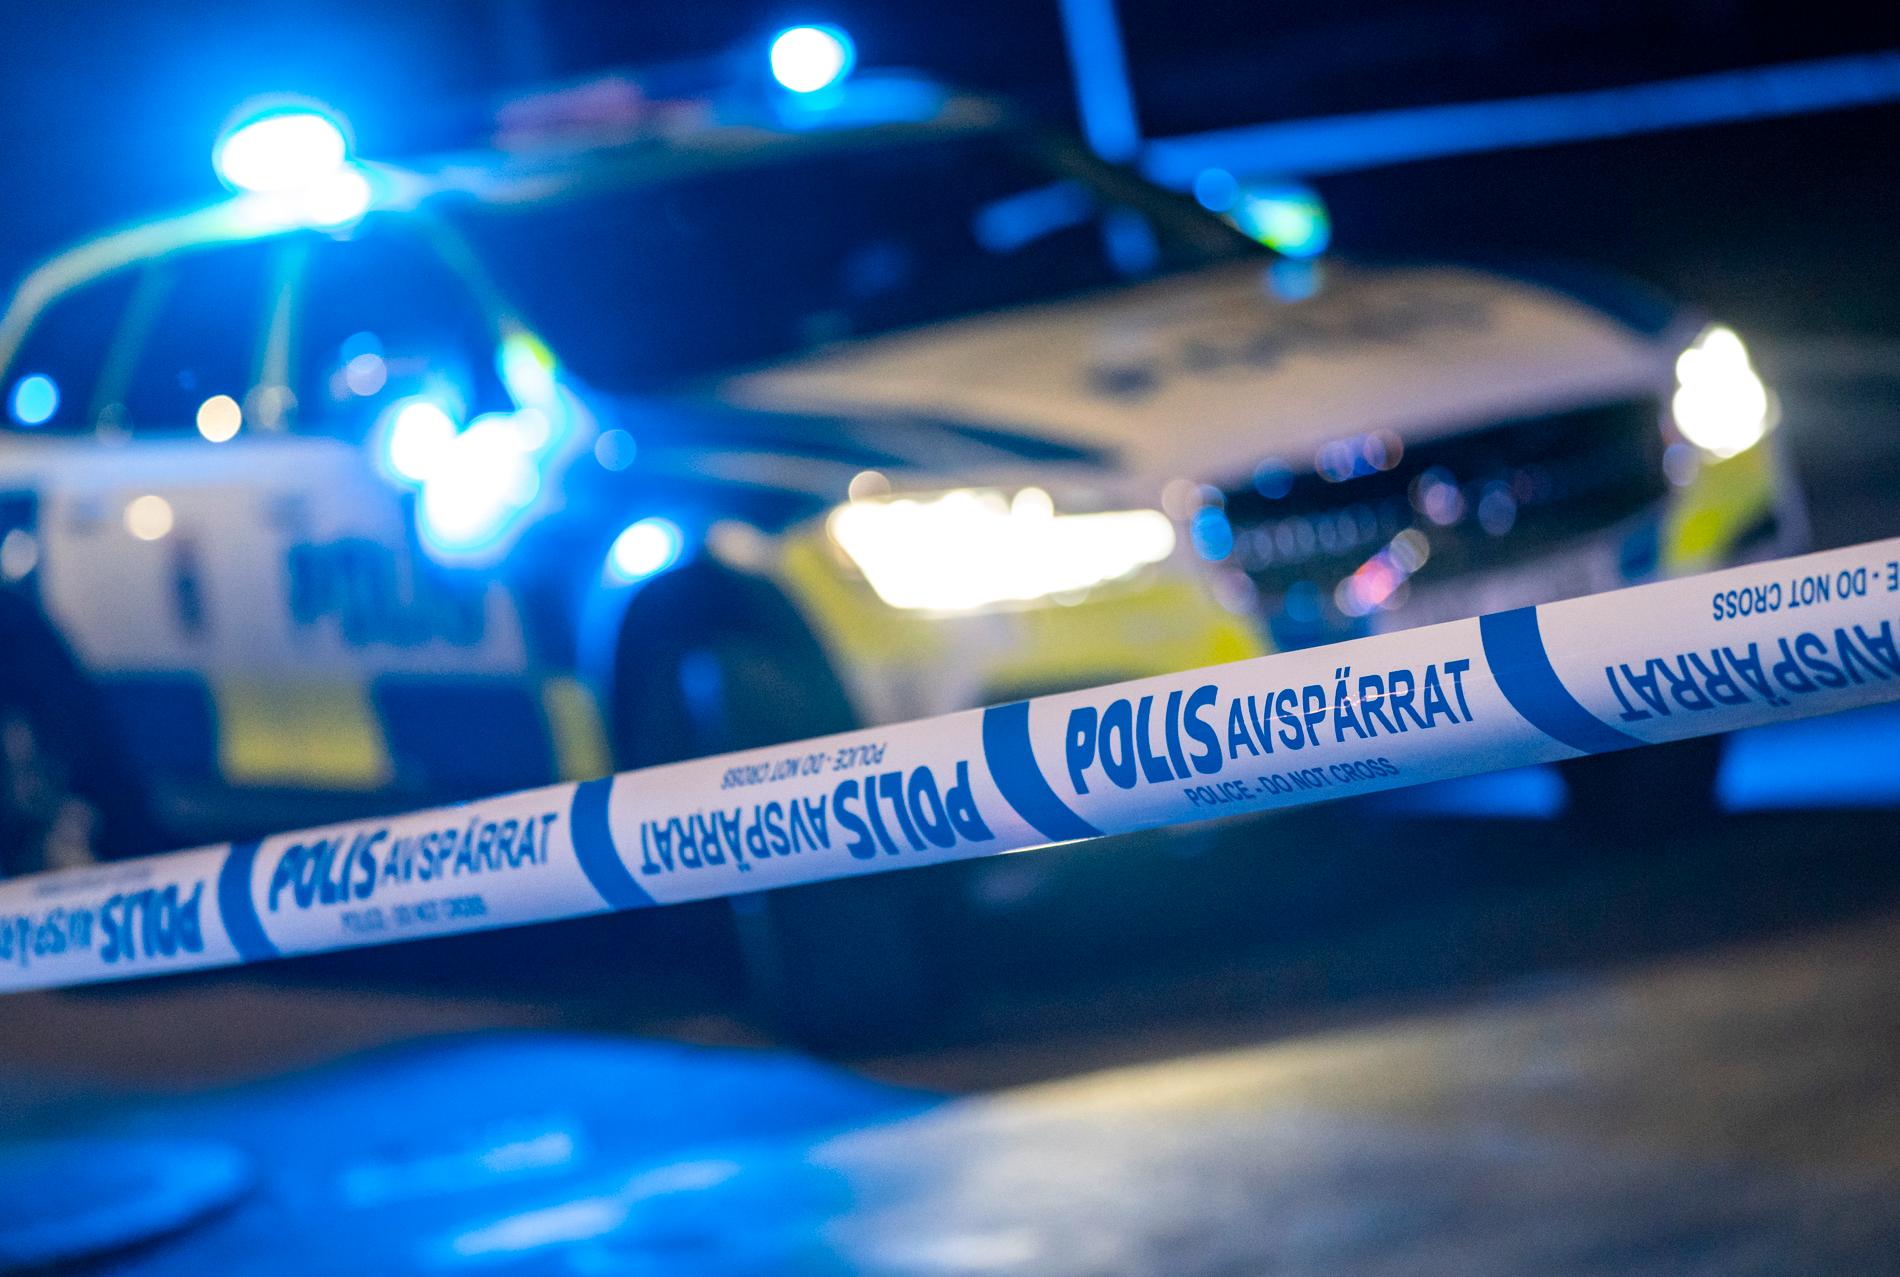 Flera personer fördes till sjukhus efter en grov misshandel i Gävle, uppger polisen.